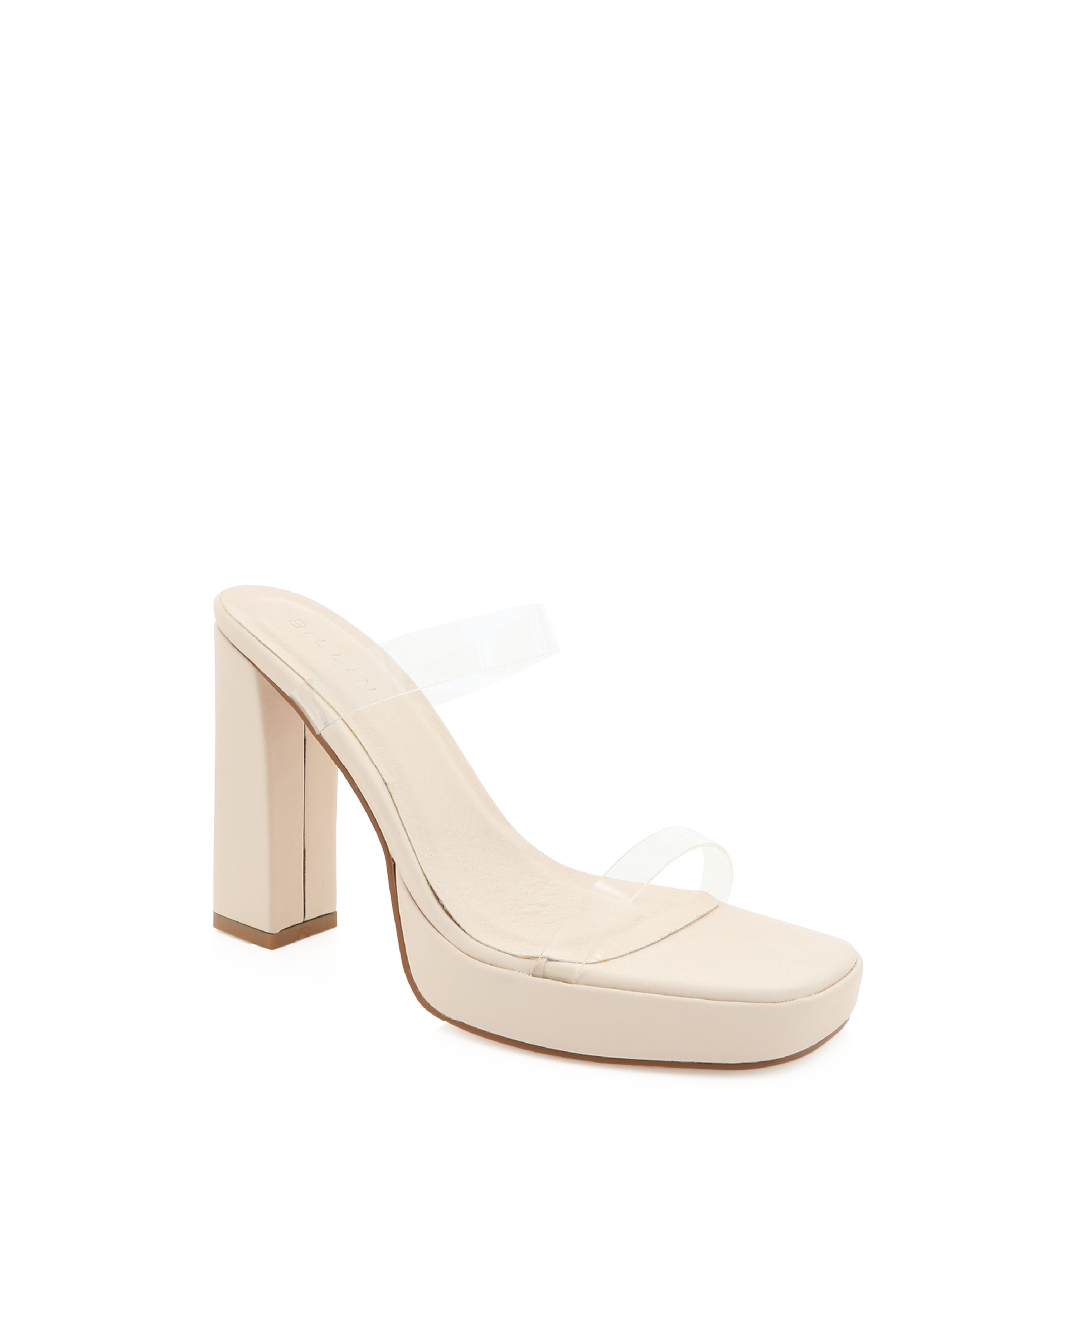 TAMIRA - BONE-CLEAR-Heels-Billini-Billini